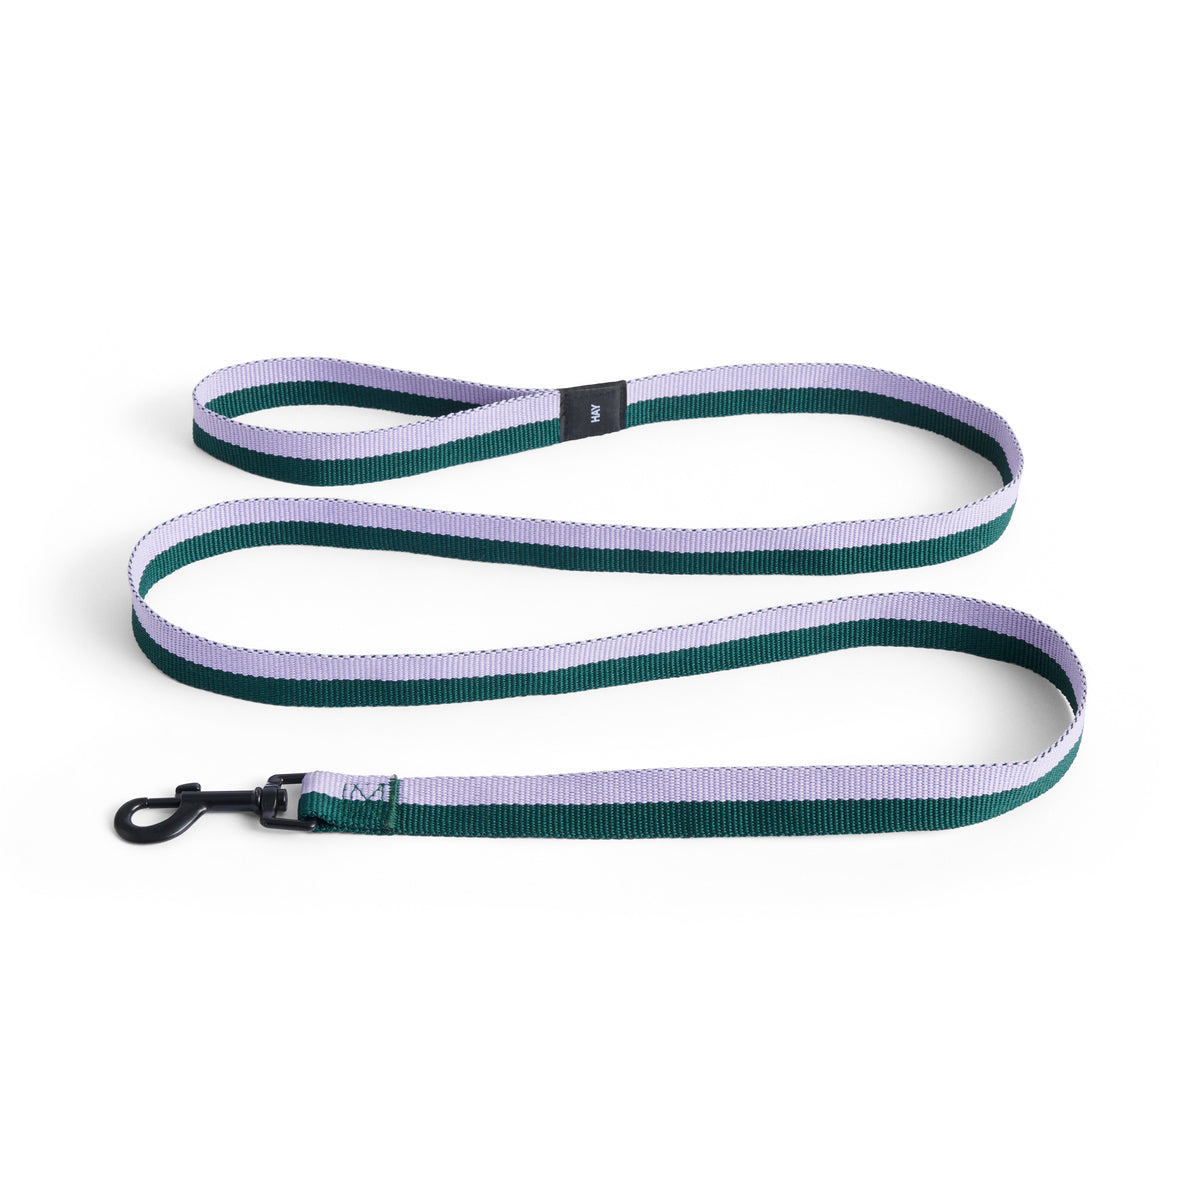 Flat Lavender Green dog leash - HAY